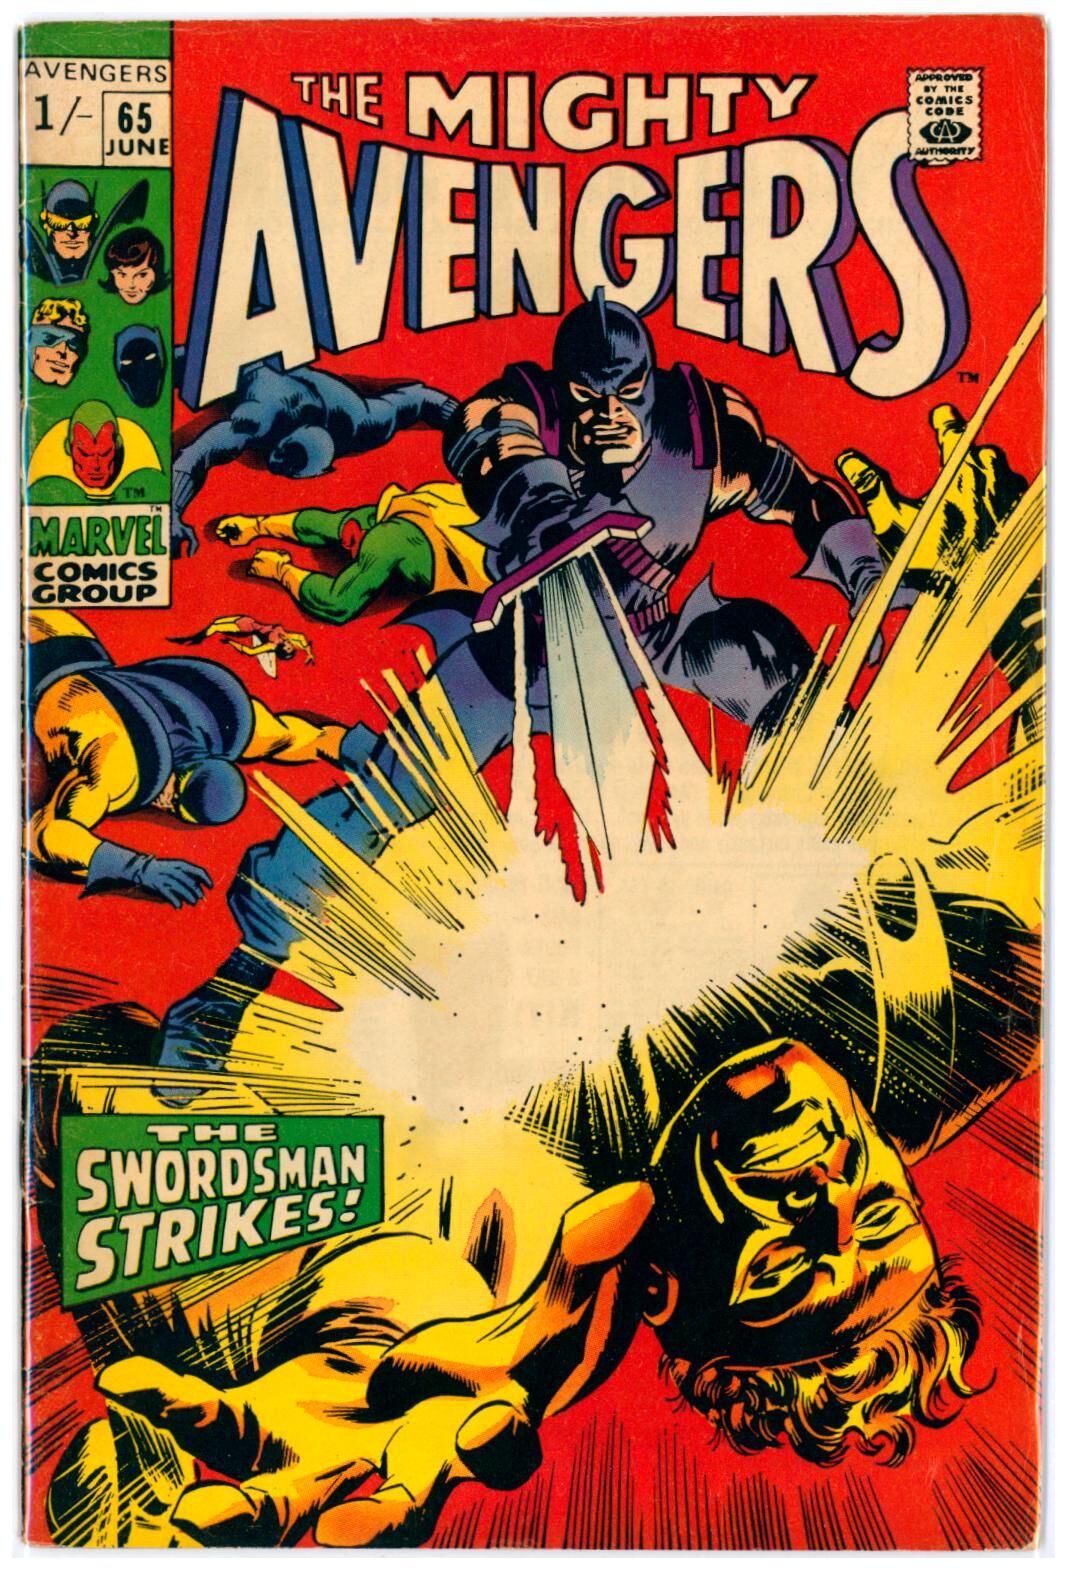 Avengers #65